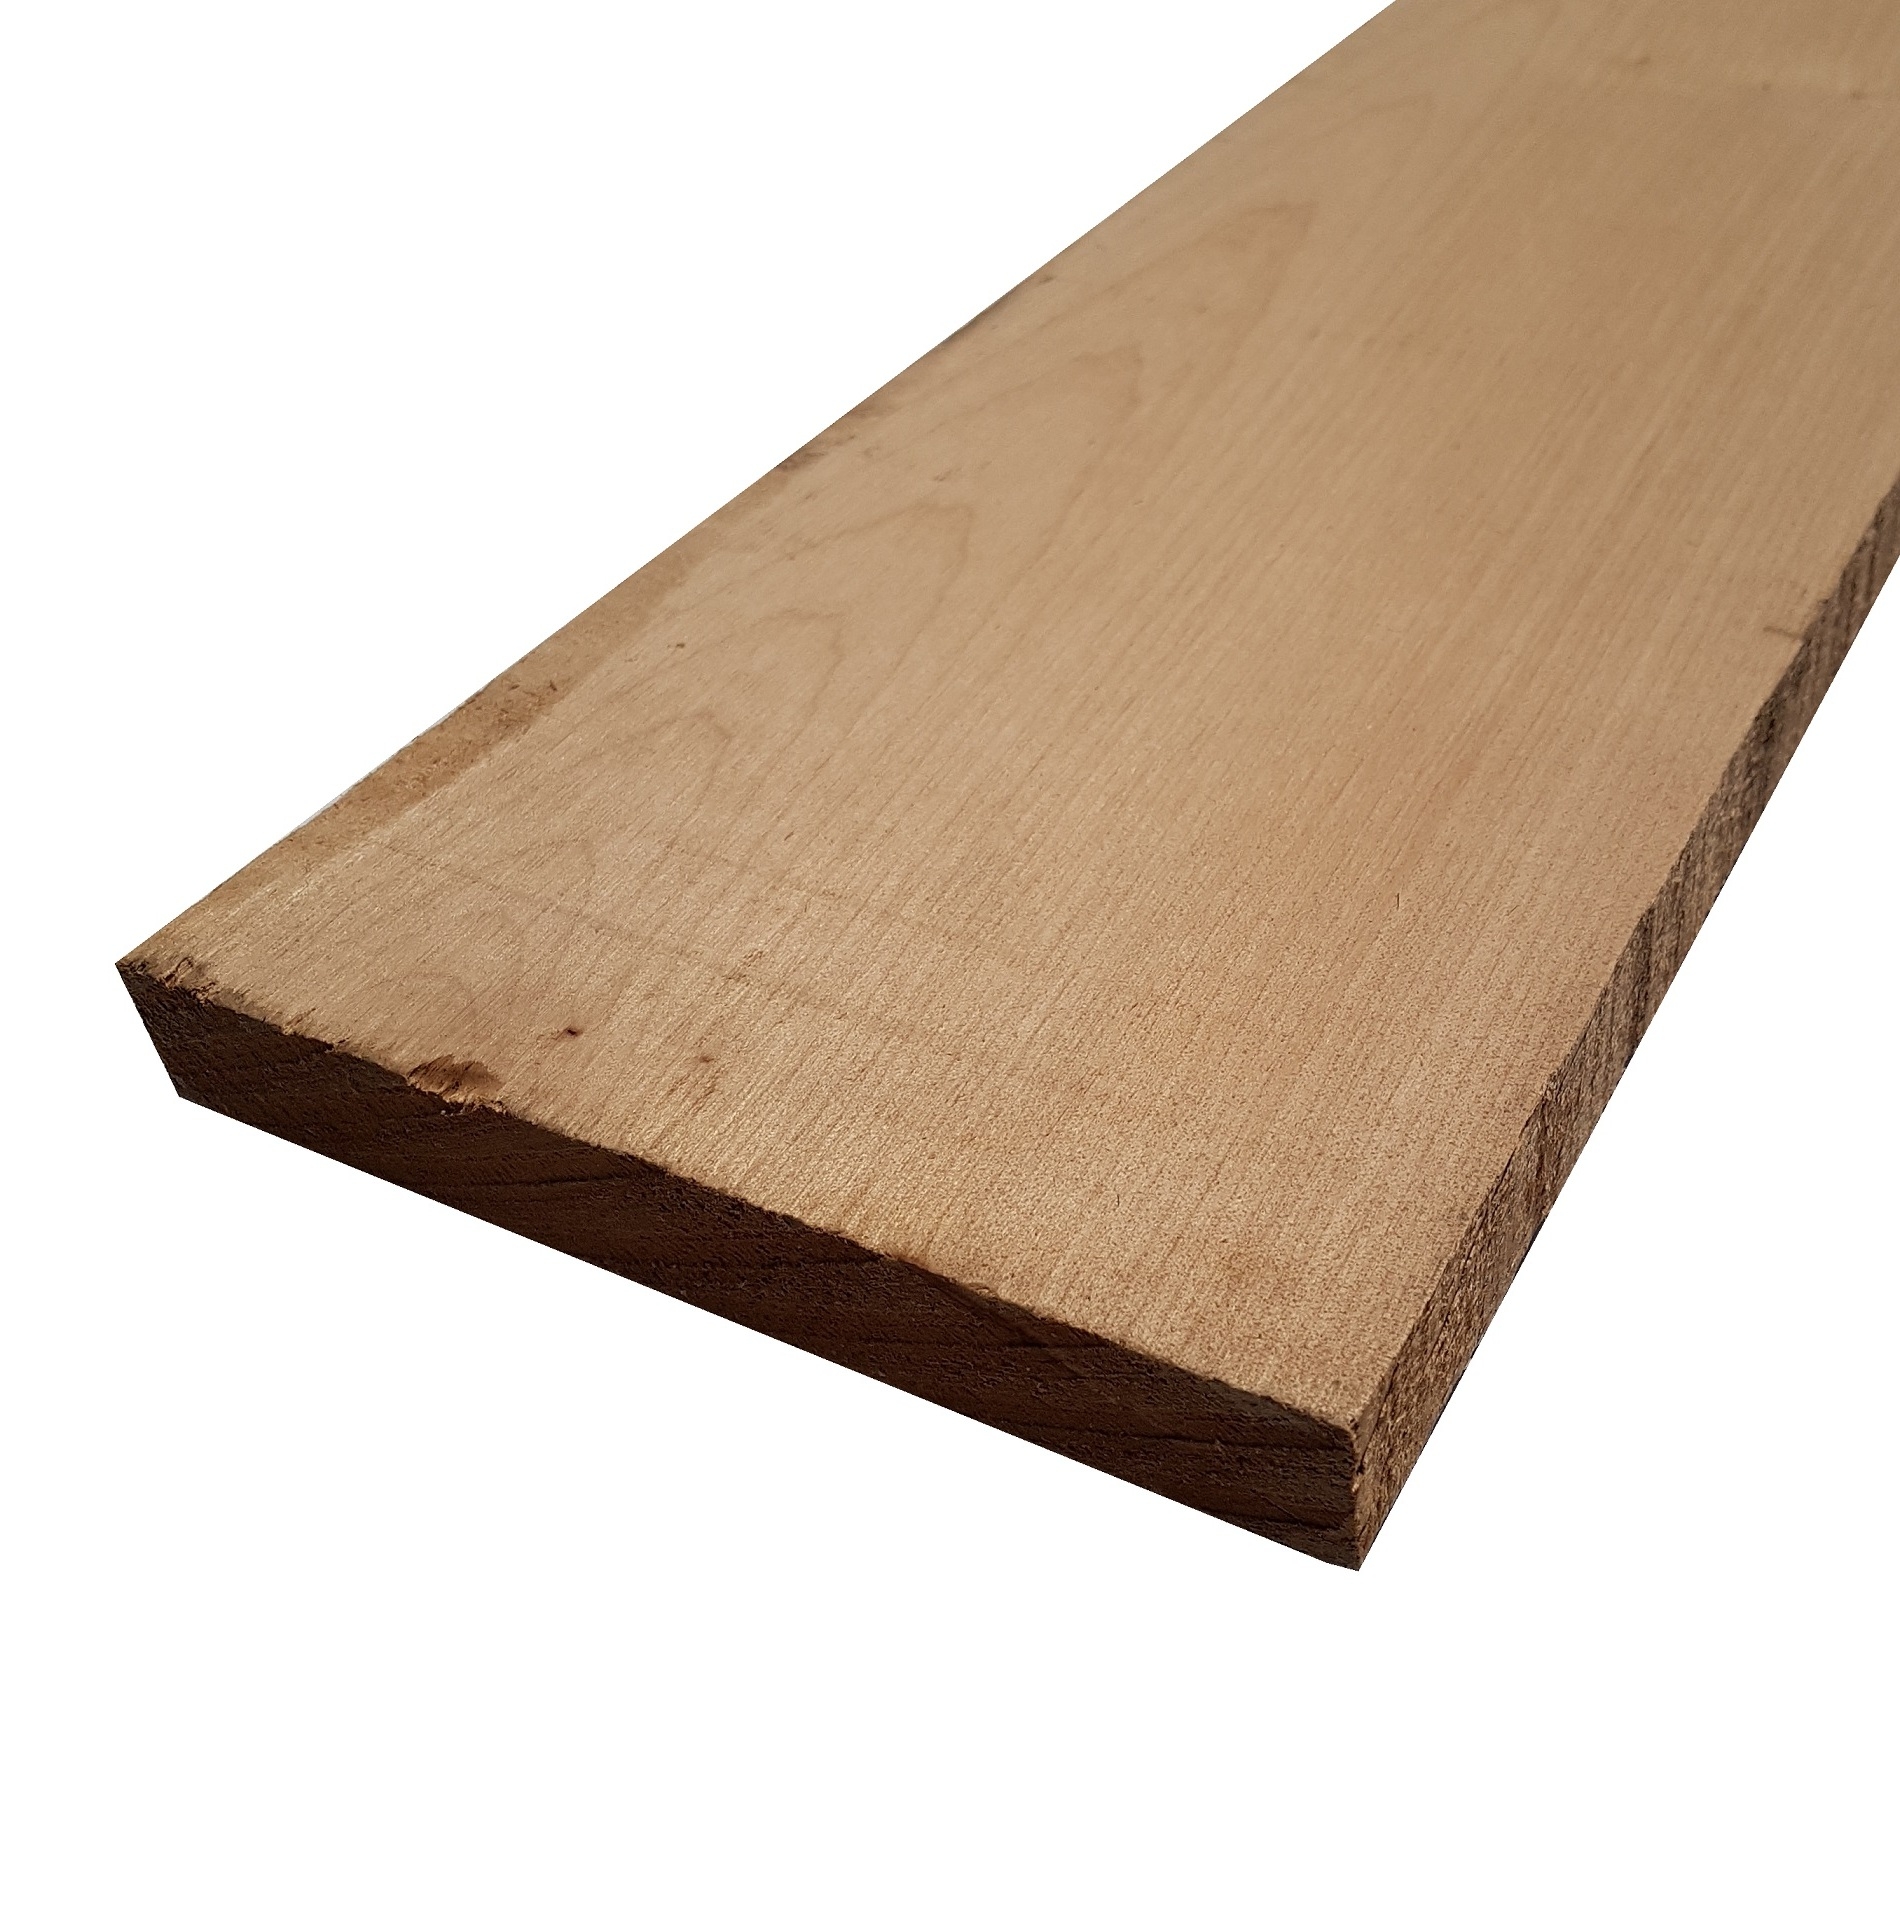 Tavola legno di Acero Pacific Coast Maple Calibrato refilato grezzo mm 24 x 100 x 1200